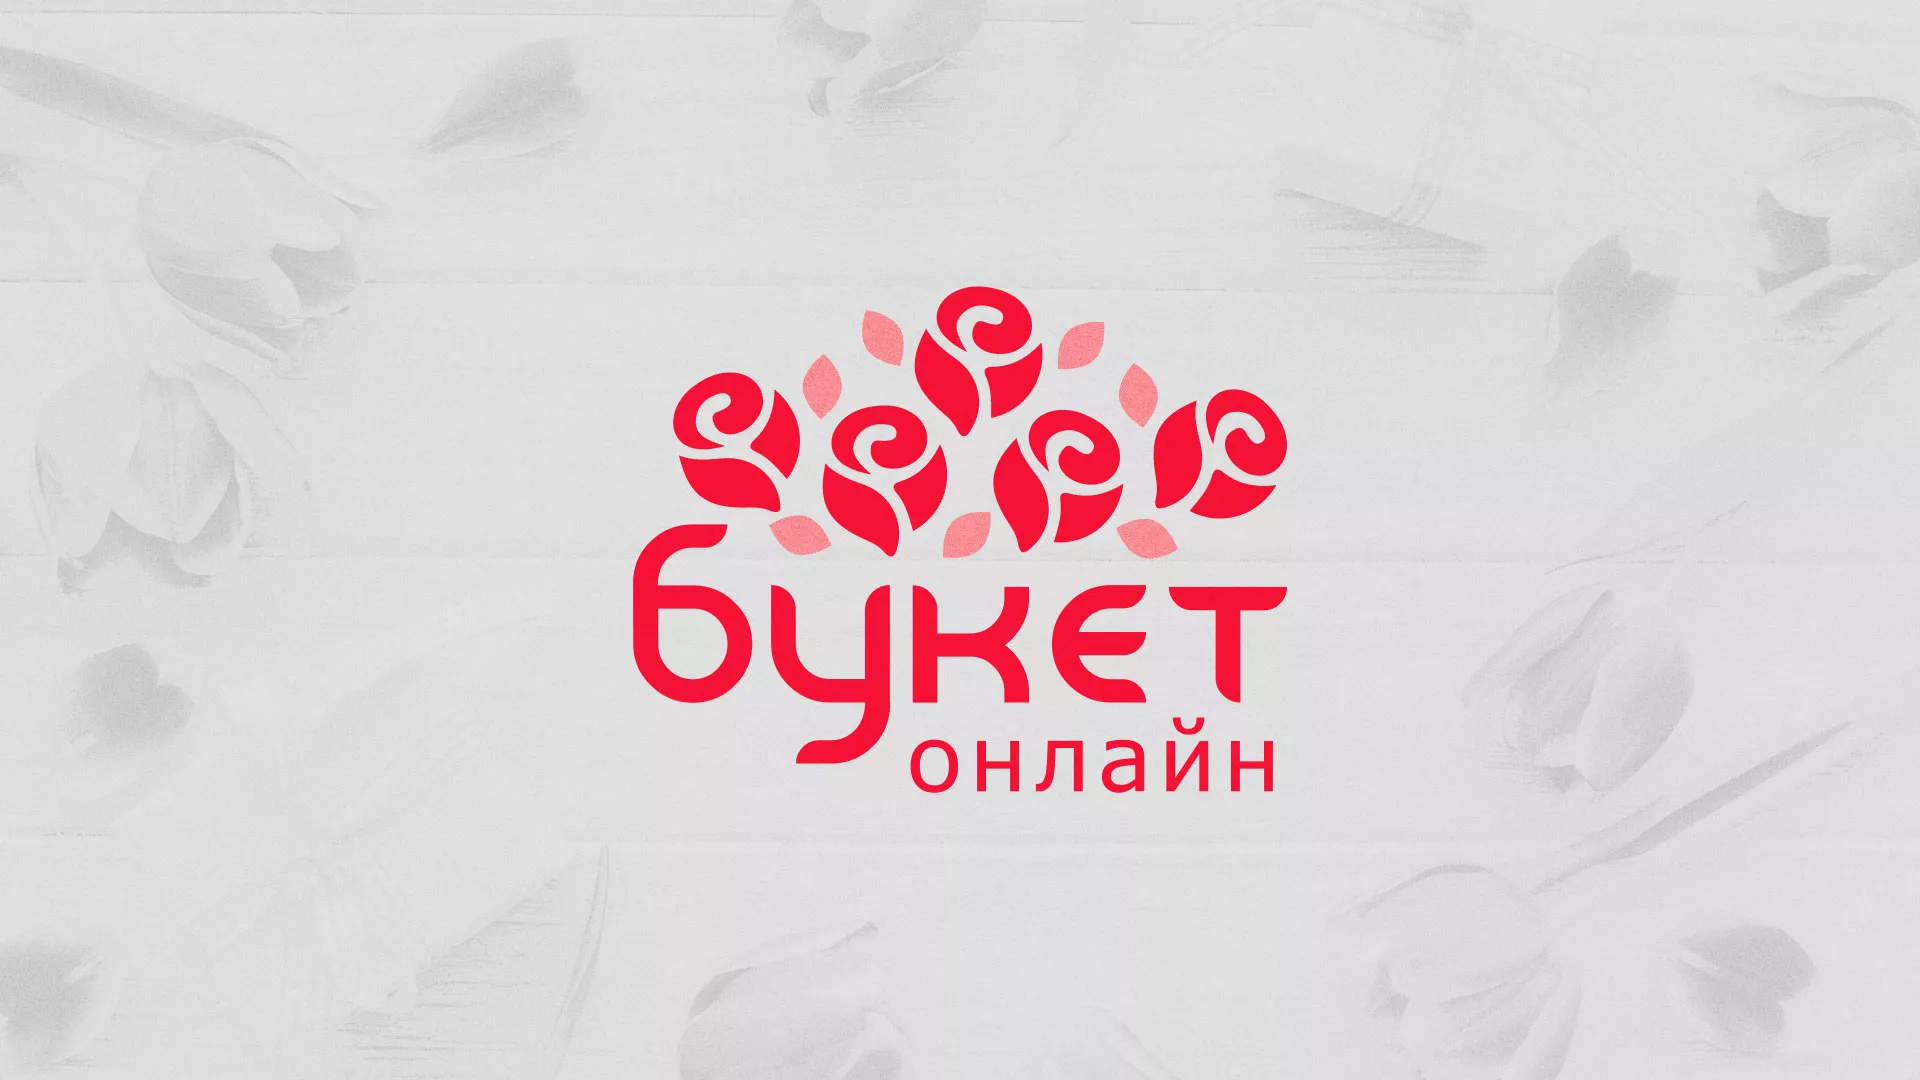 Создание интернет-магазина «Букет-онлайн» по цветам в Назарово